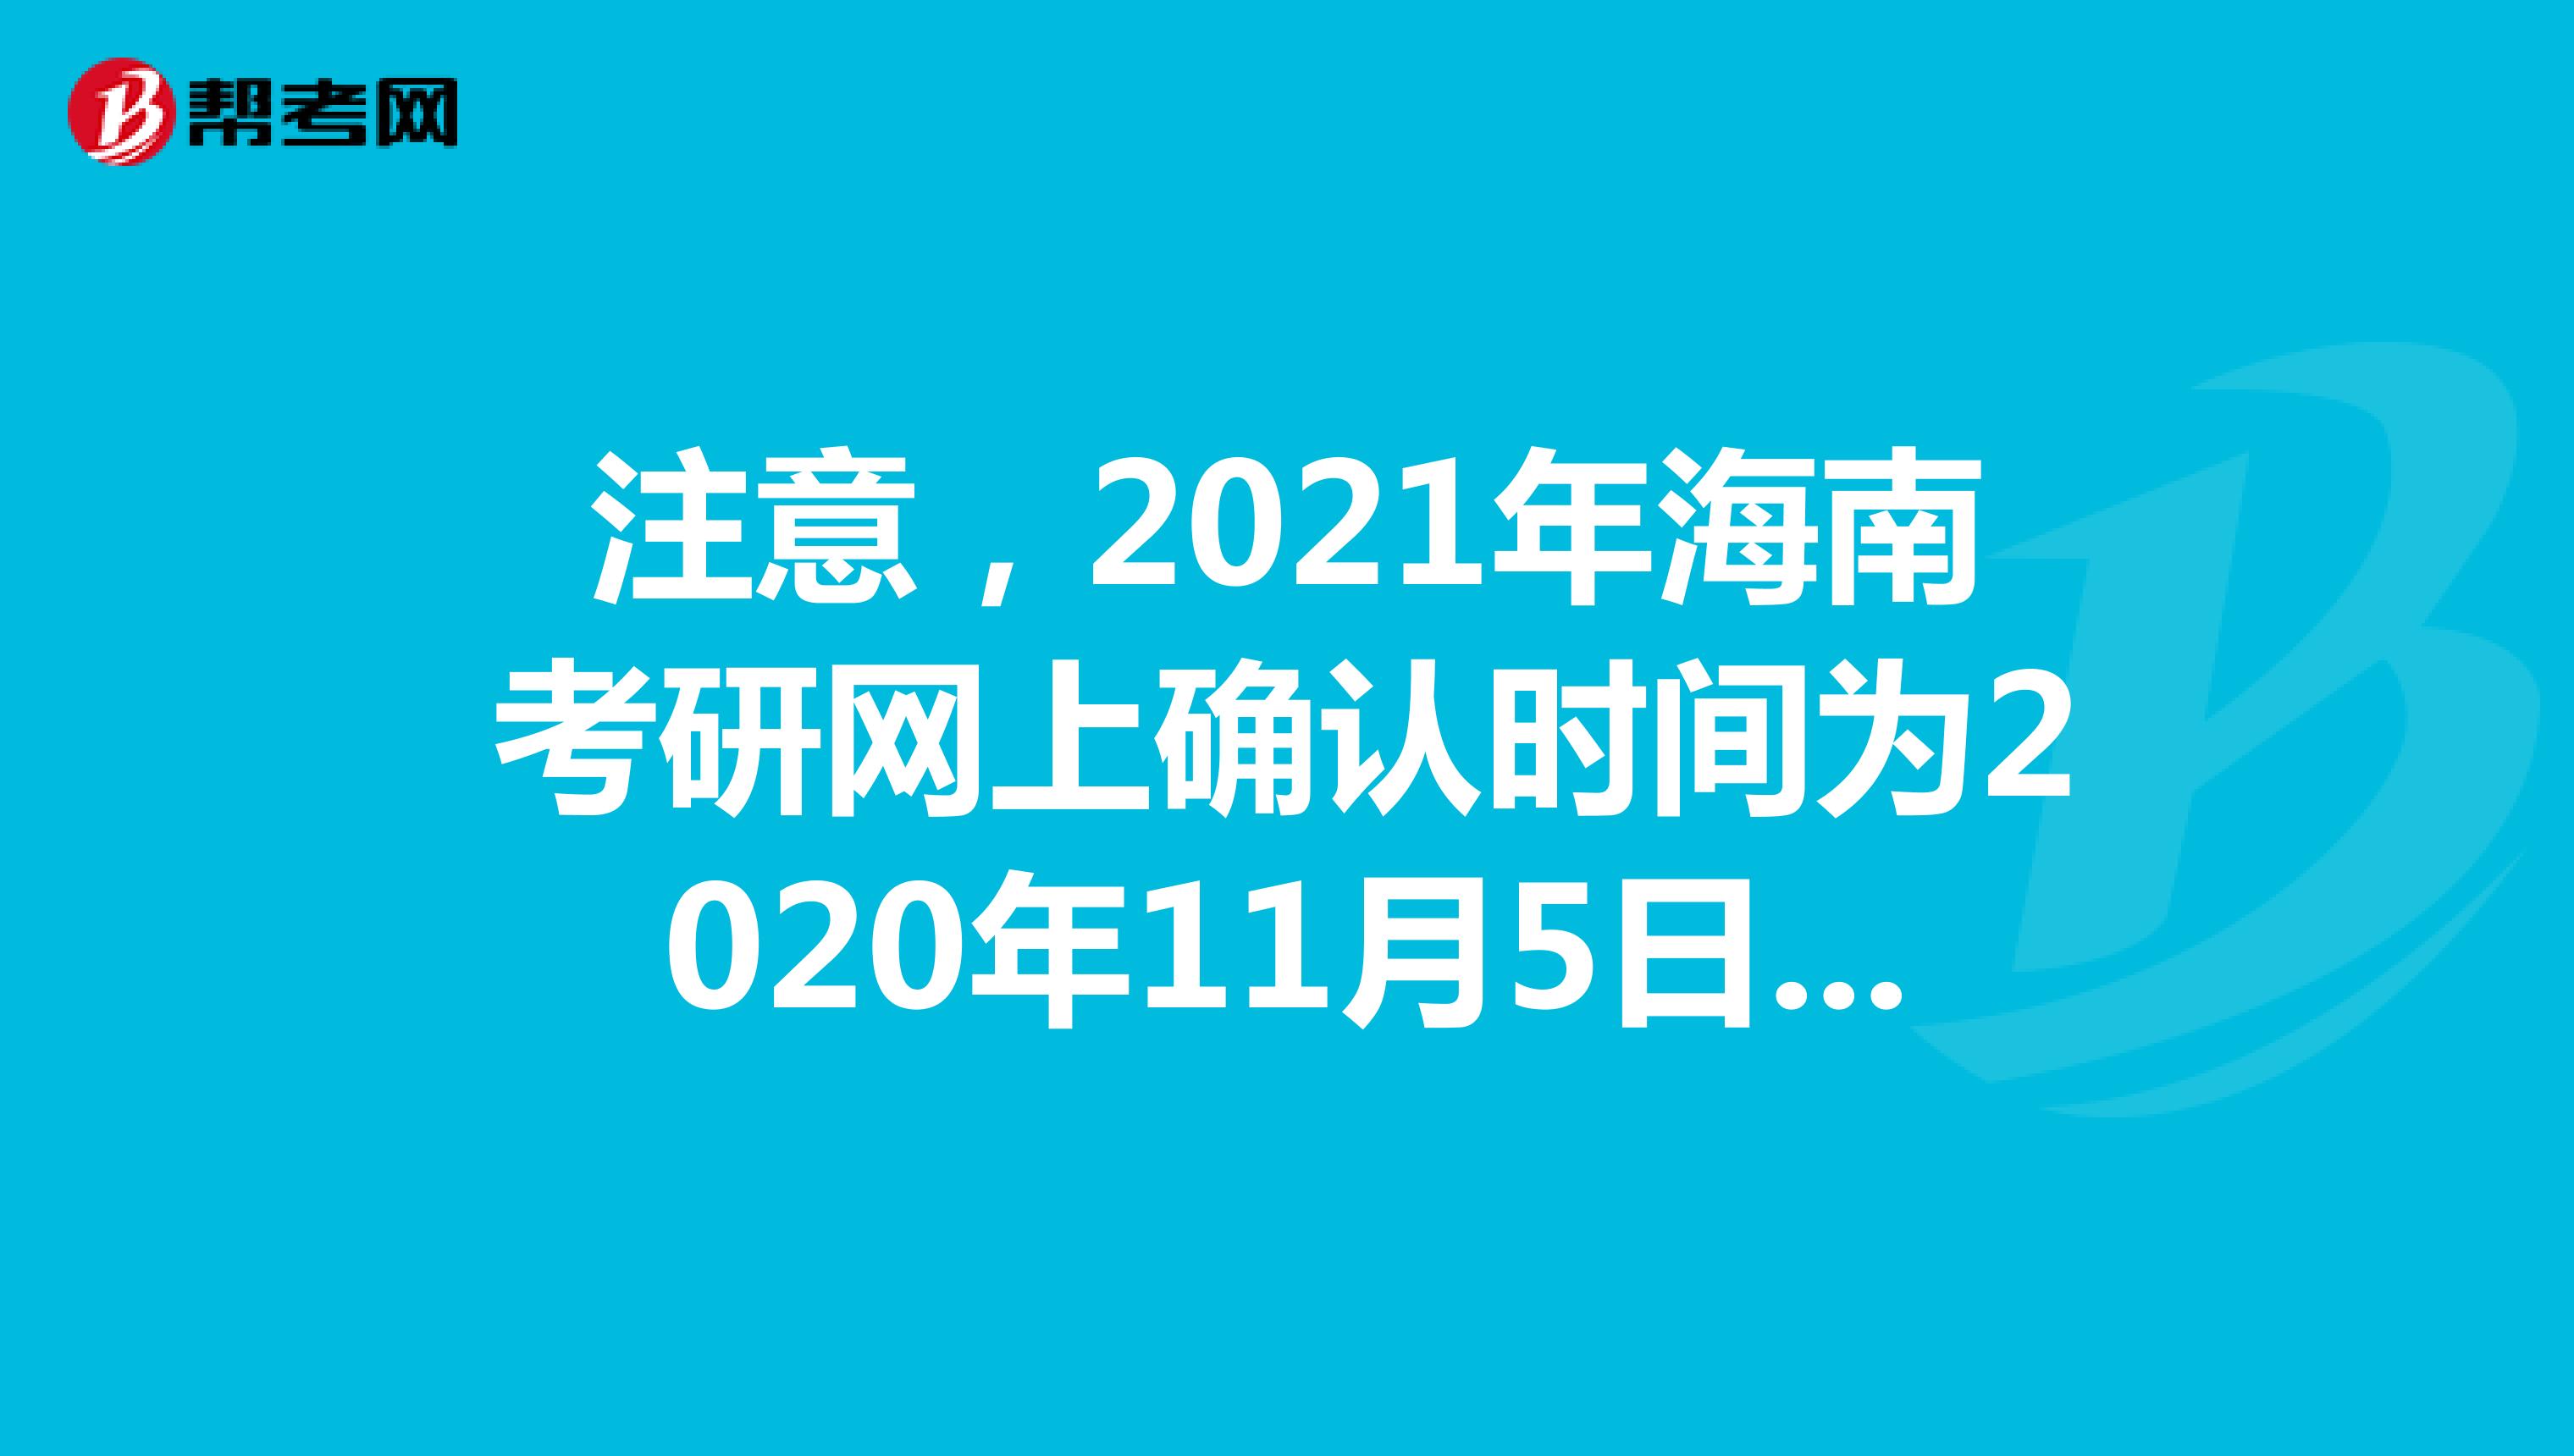 注意，2021年海南考研网上确认时间为2020年11月5日至9日